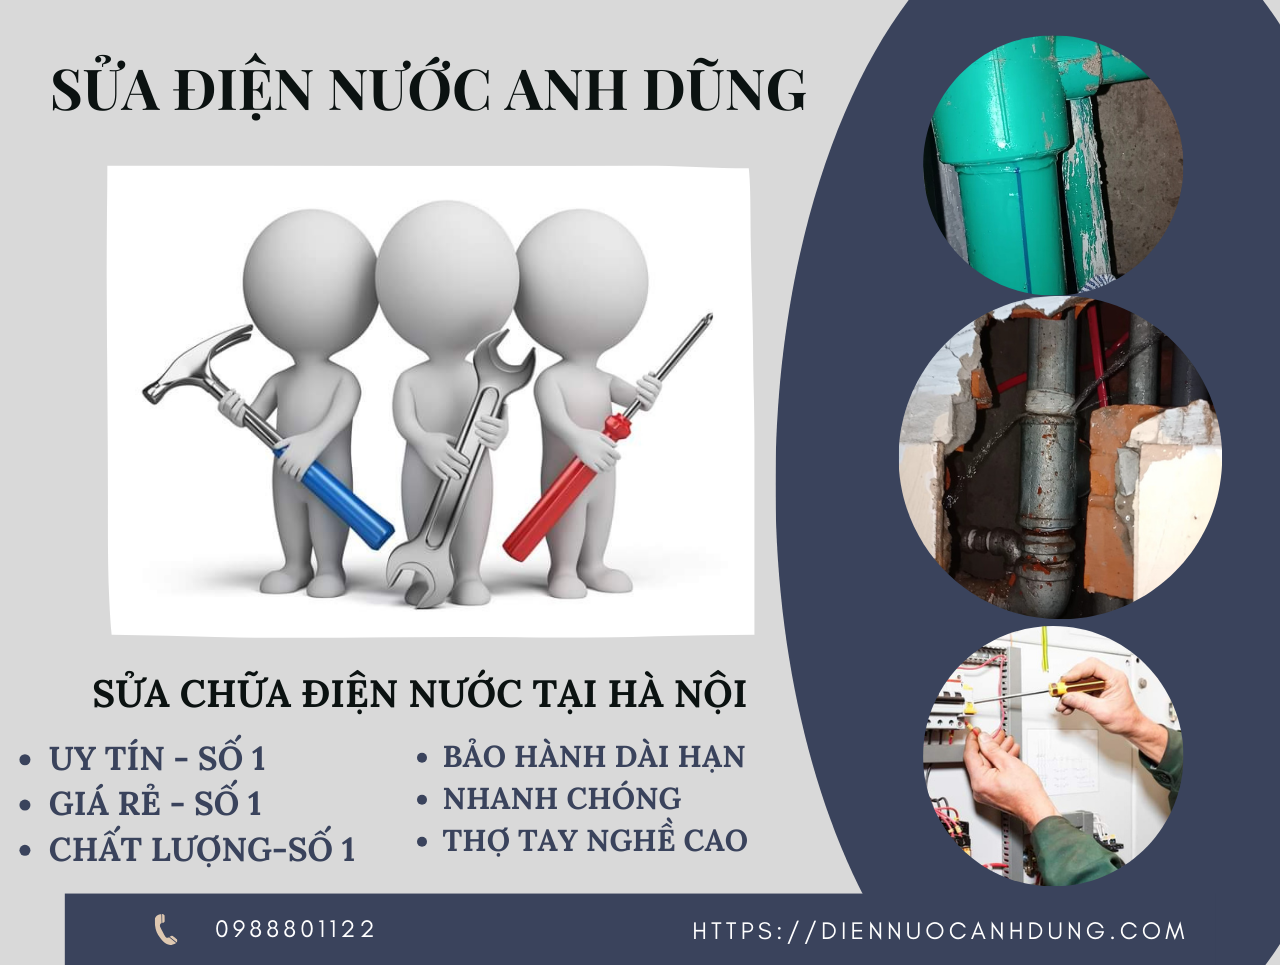 Sửa chữa điện nước tại nhà Hà Nội nhanh, giá rẻ, uy tín số 1